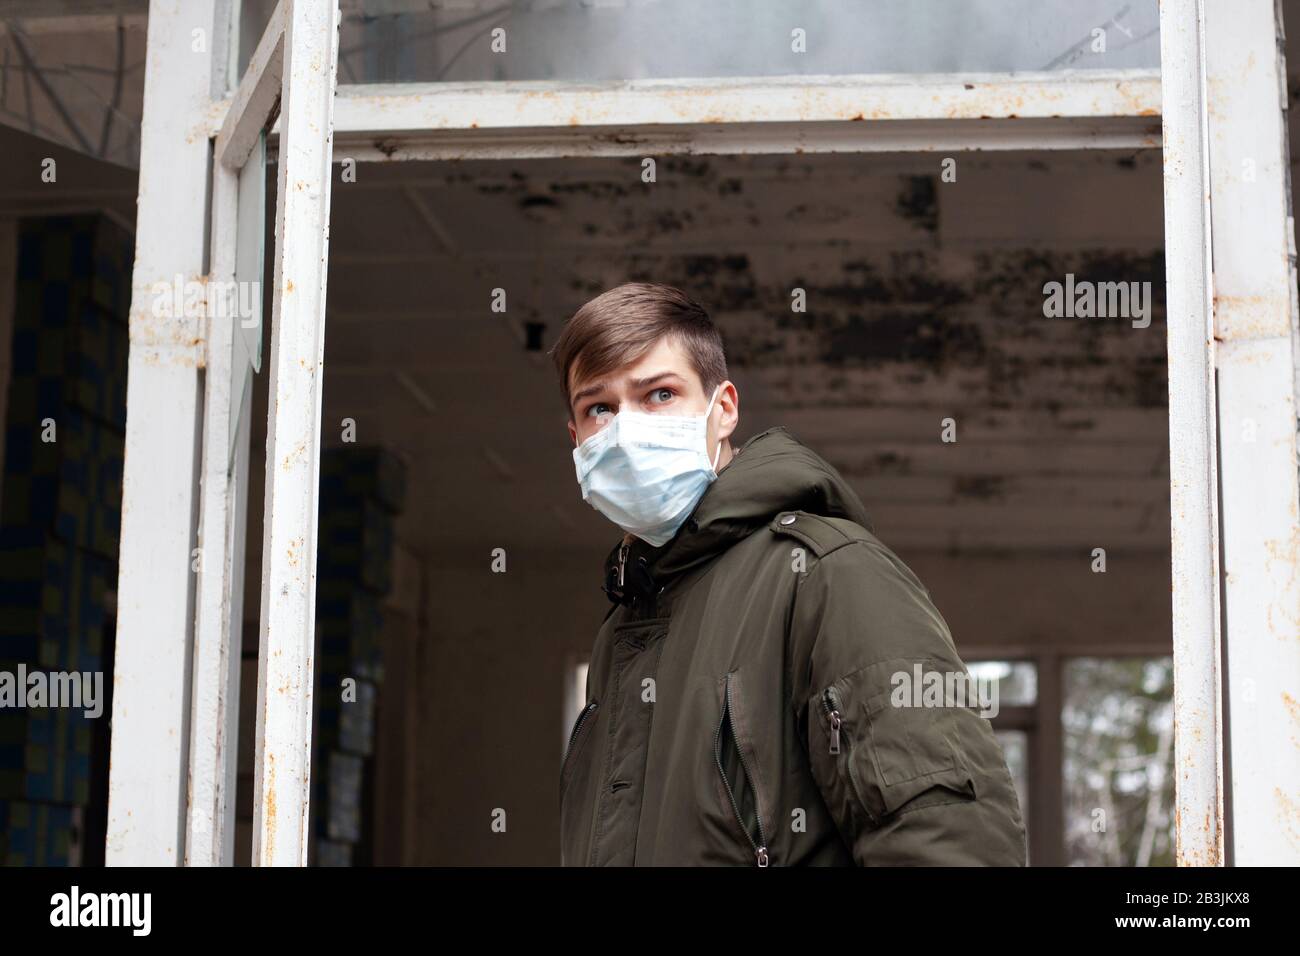 epidemia di coronavirus. quarantena in città, uomo che indossa una maschera medica. pandemia virale covid-19. Foto Stock